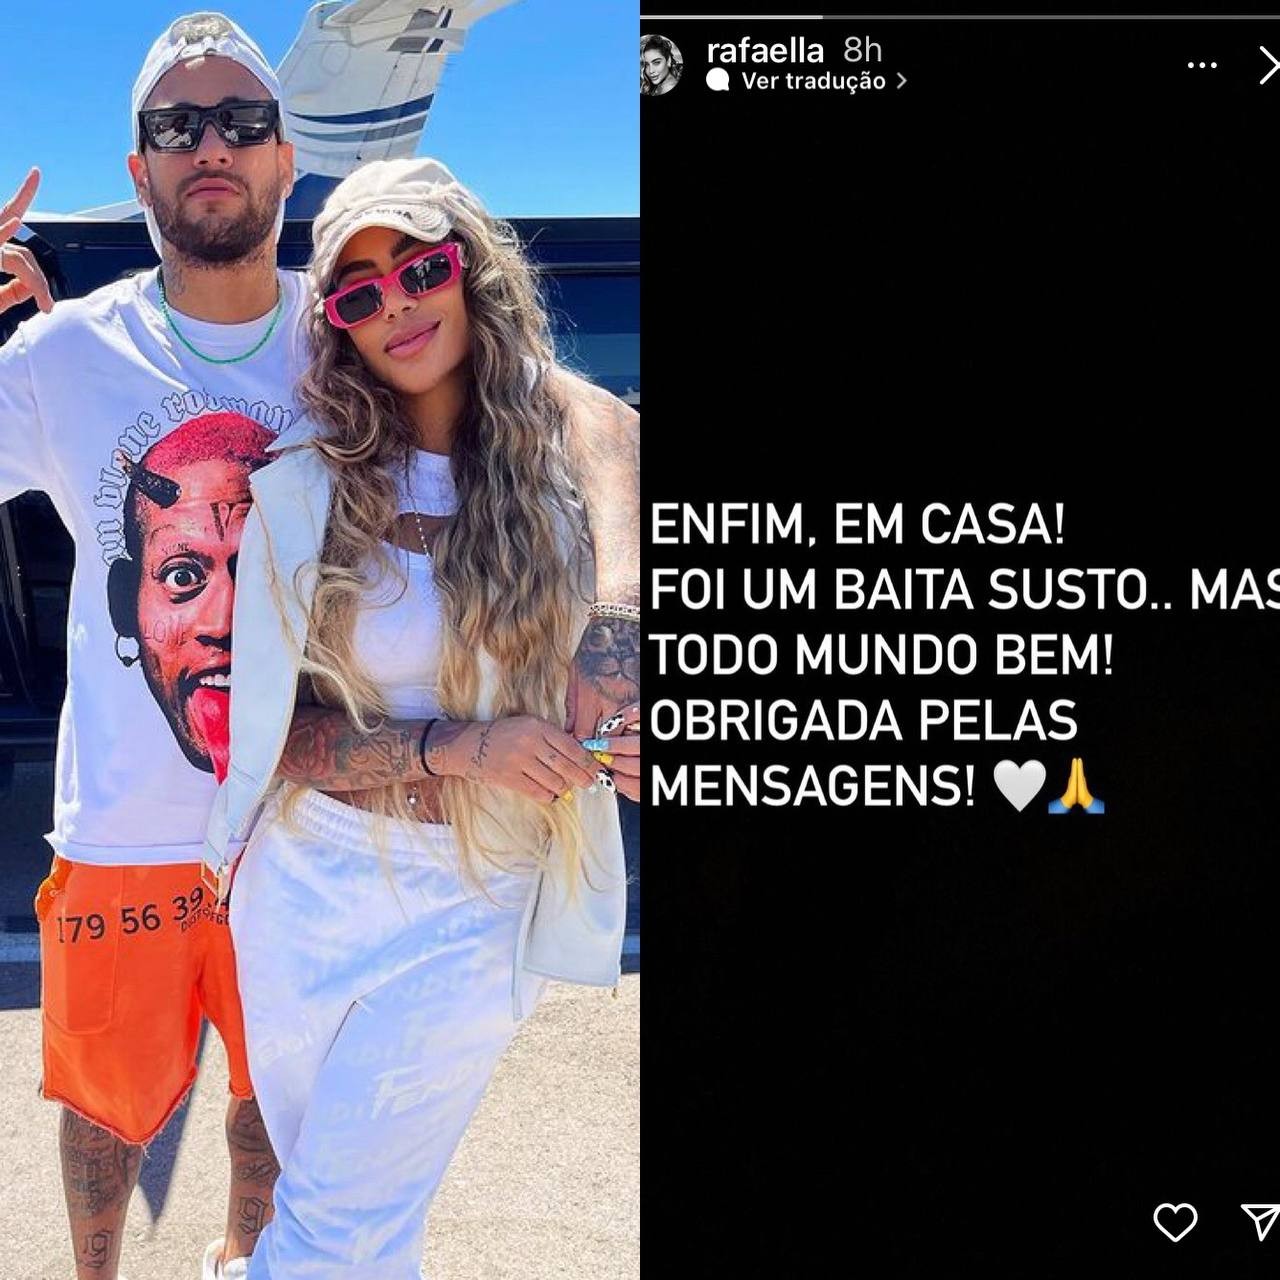 Rafaella festeja chegada após susto em voo e Neymar brinca: 'Perrengue chique' (Foto: Reprodução / Instagram)